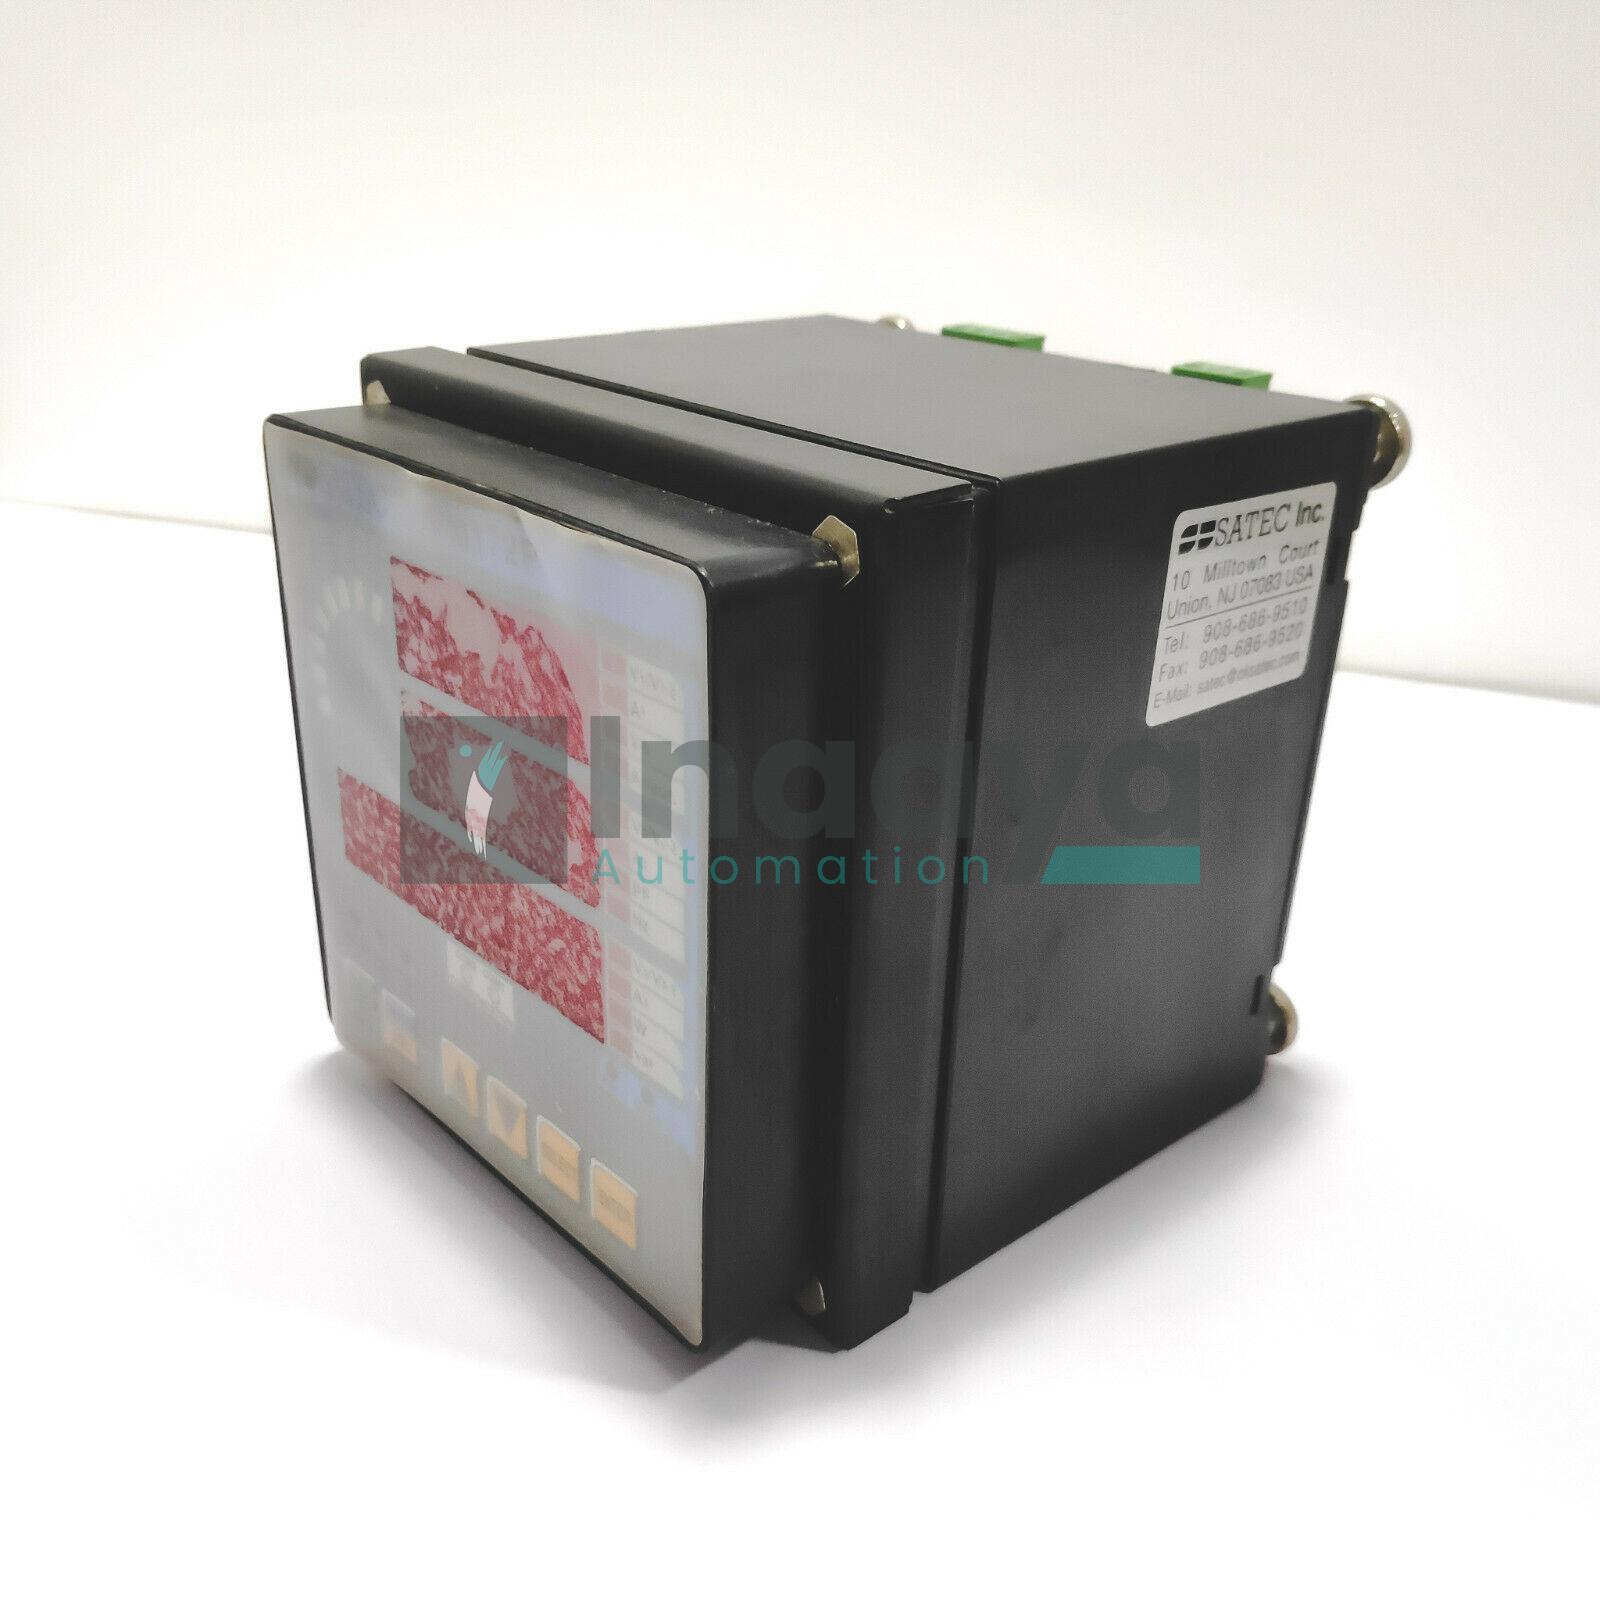 SATEC PM172P-N-U-60HZ-5-ACDC POWER METER